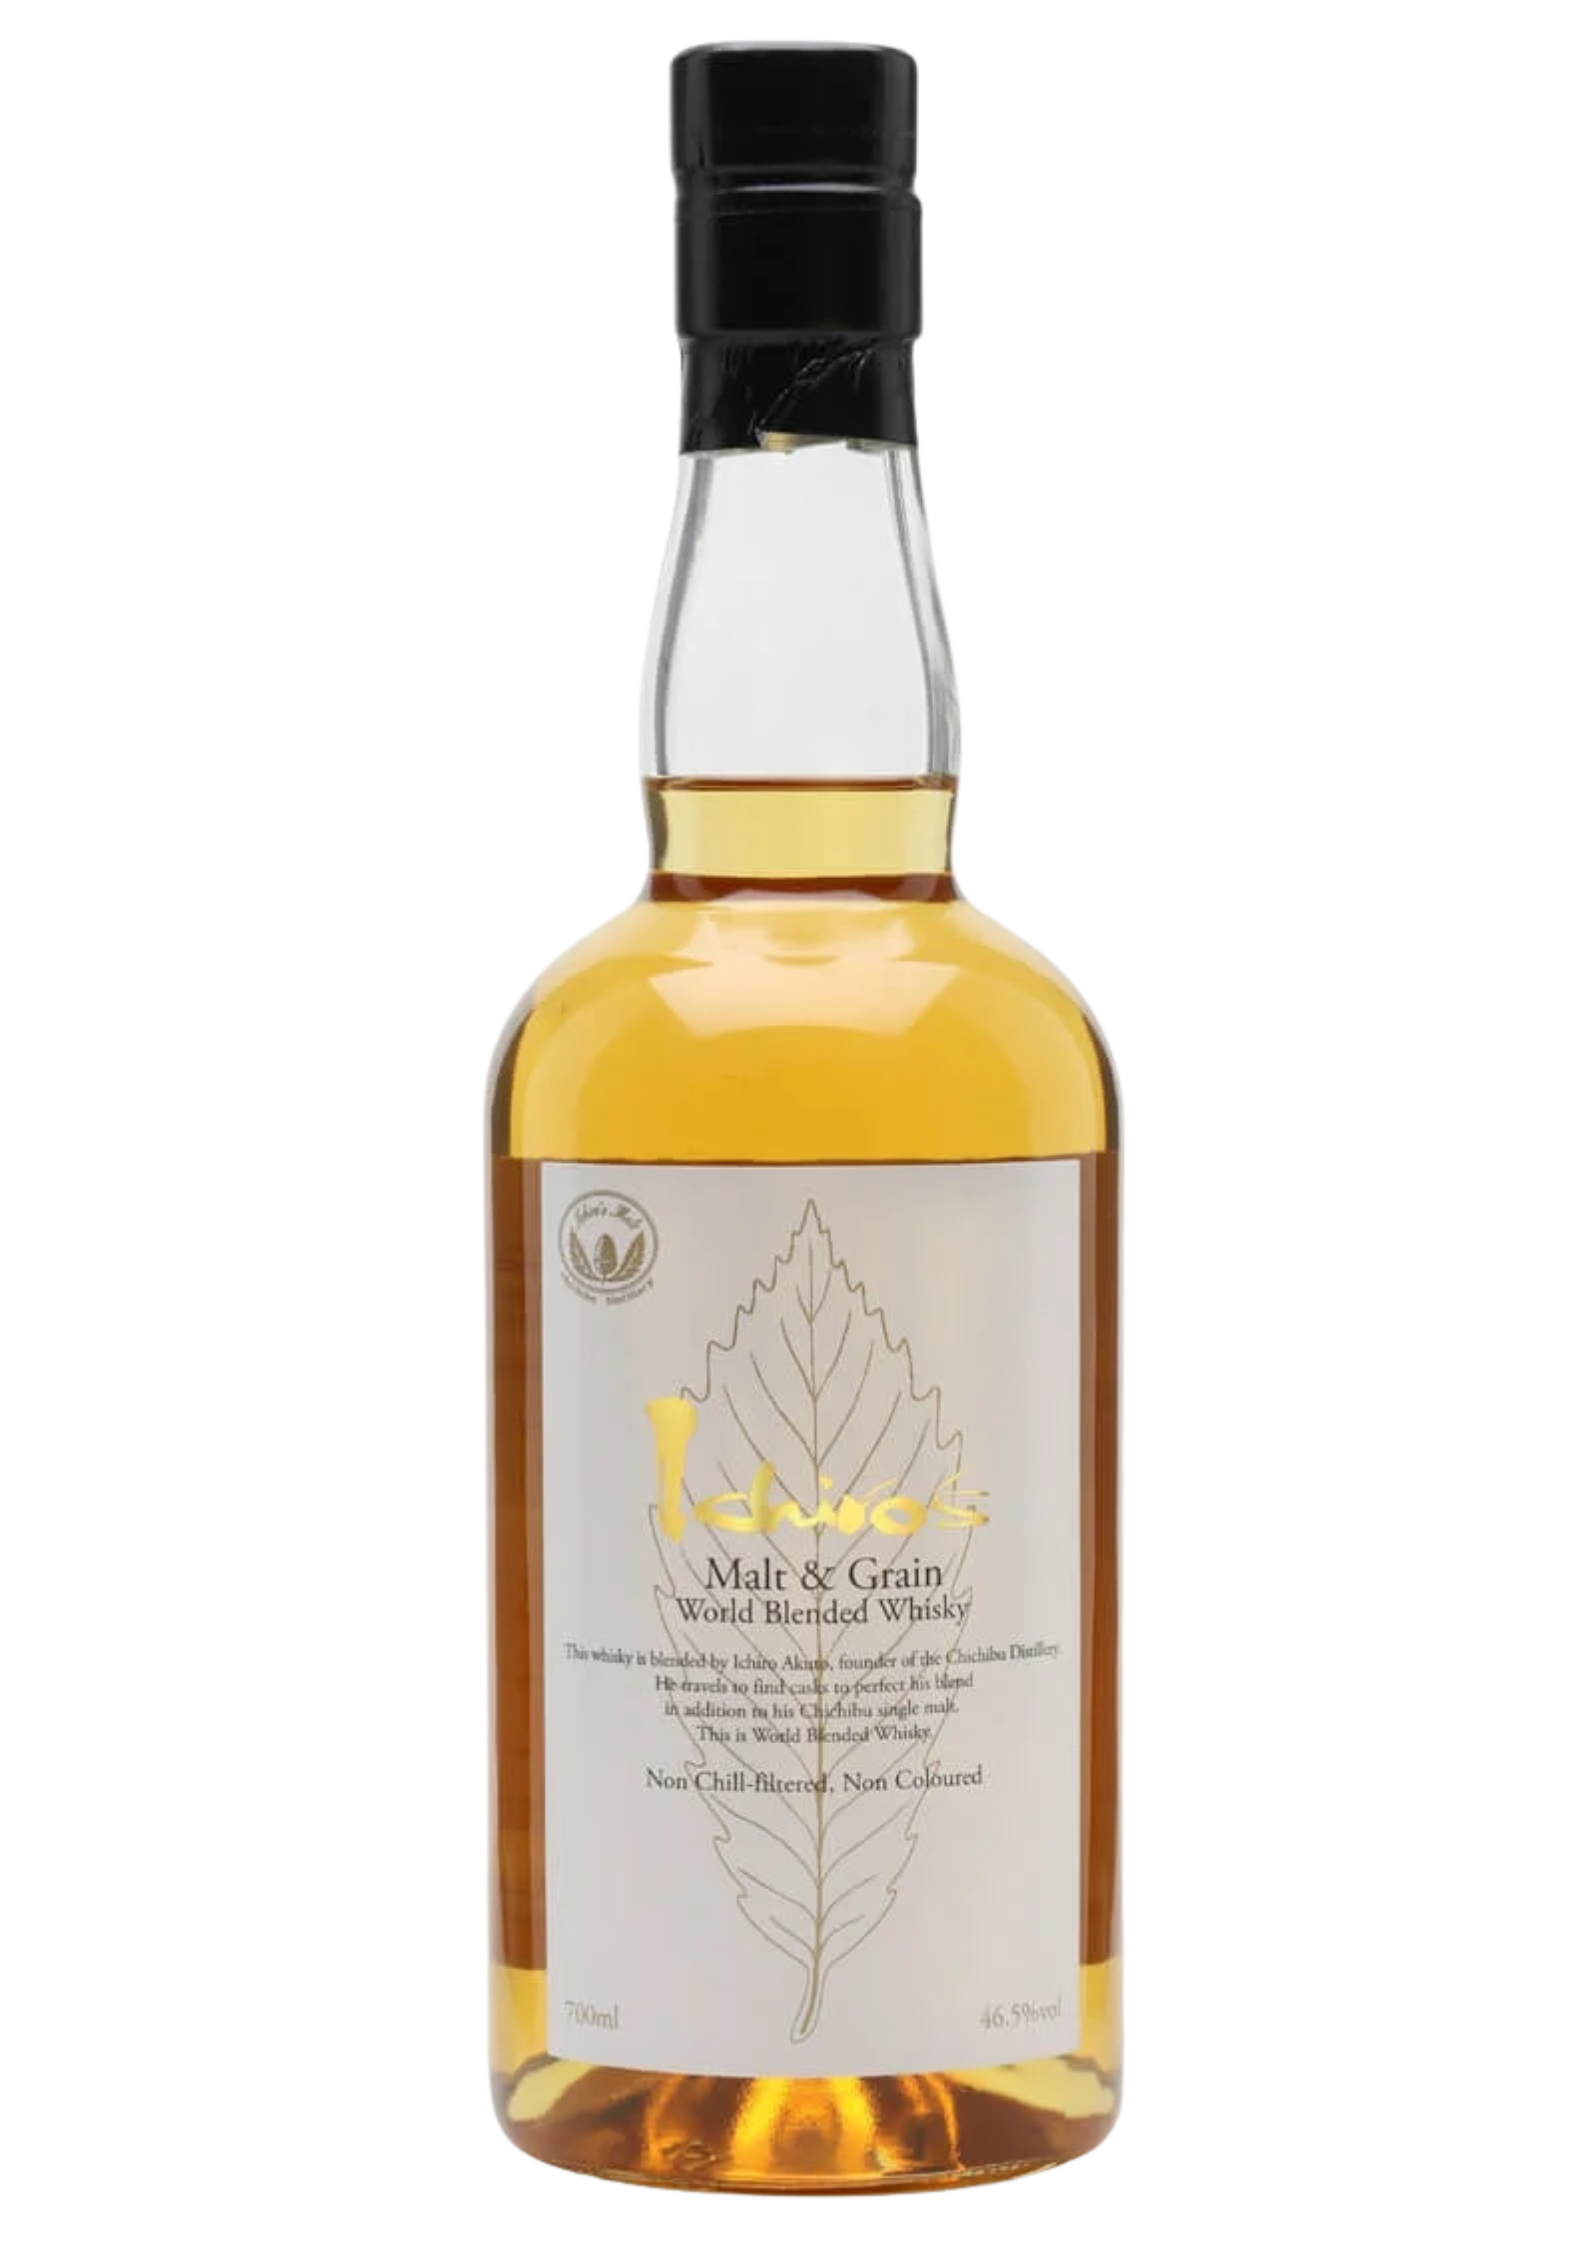 Bottle of Ichiro`s Malt & Grain World Blended Whisky, 46.5% - The Spirits Room